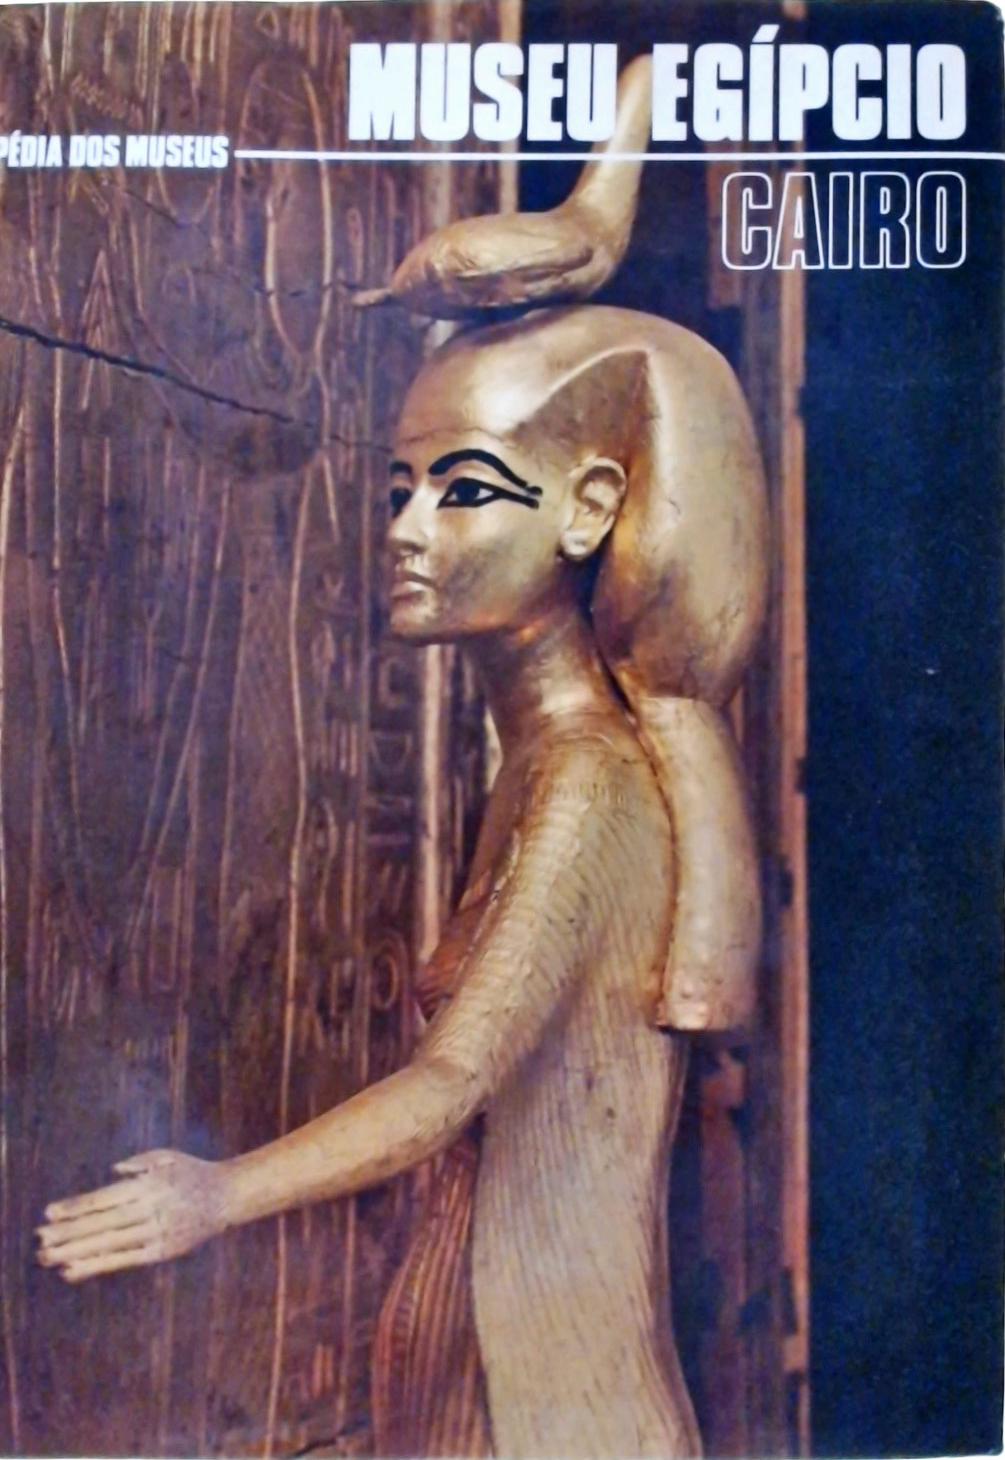 Museu Egípcio: Cairo